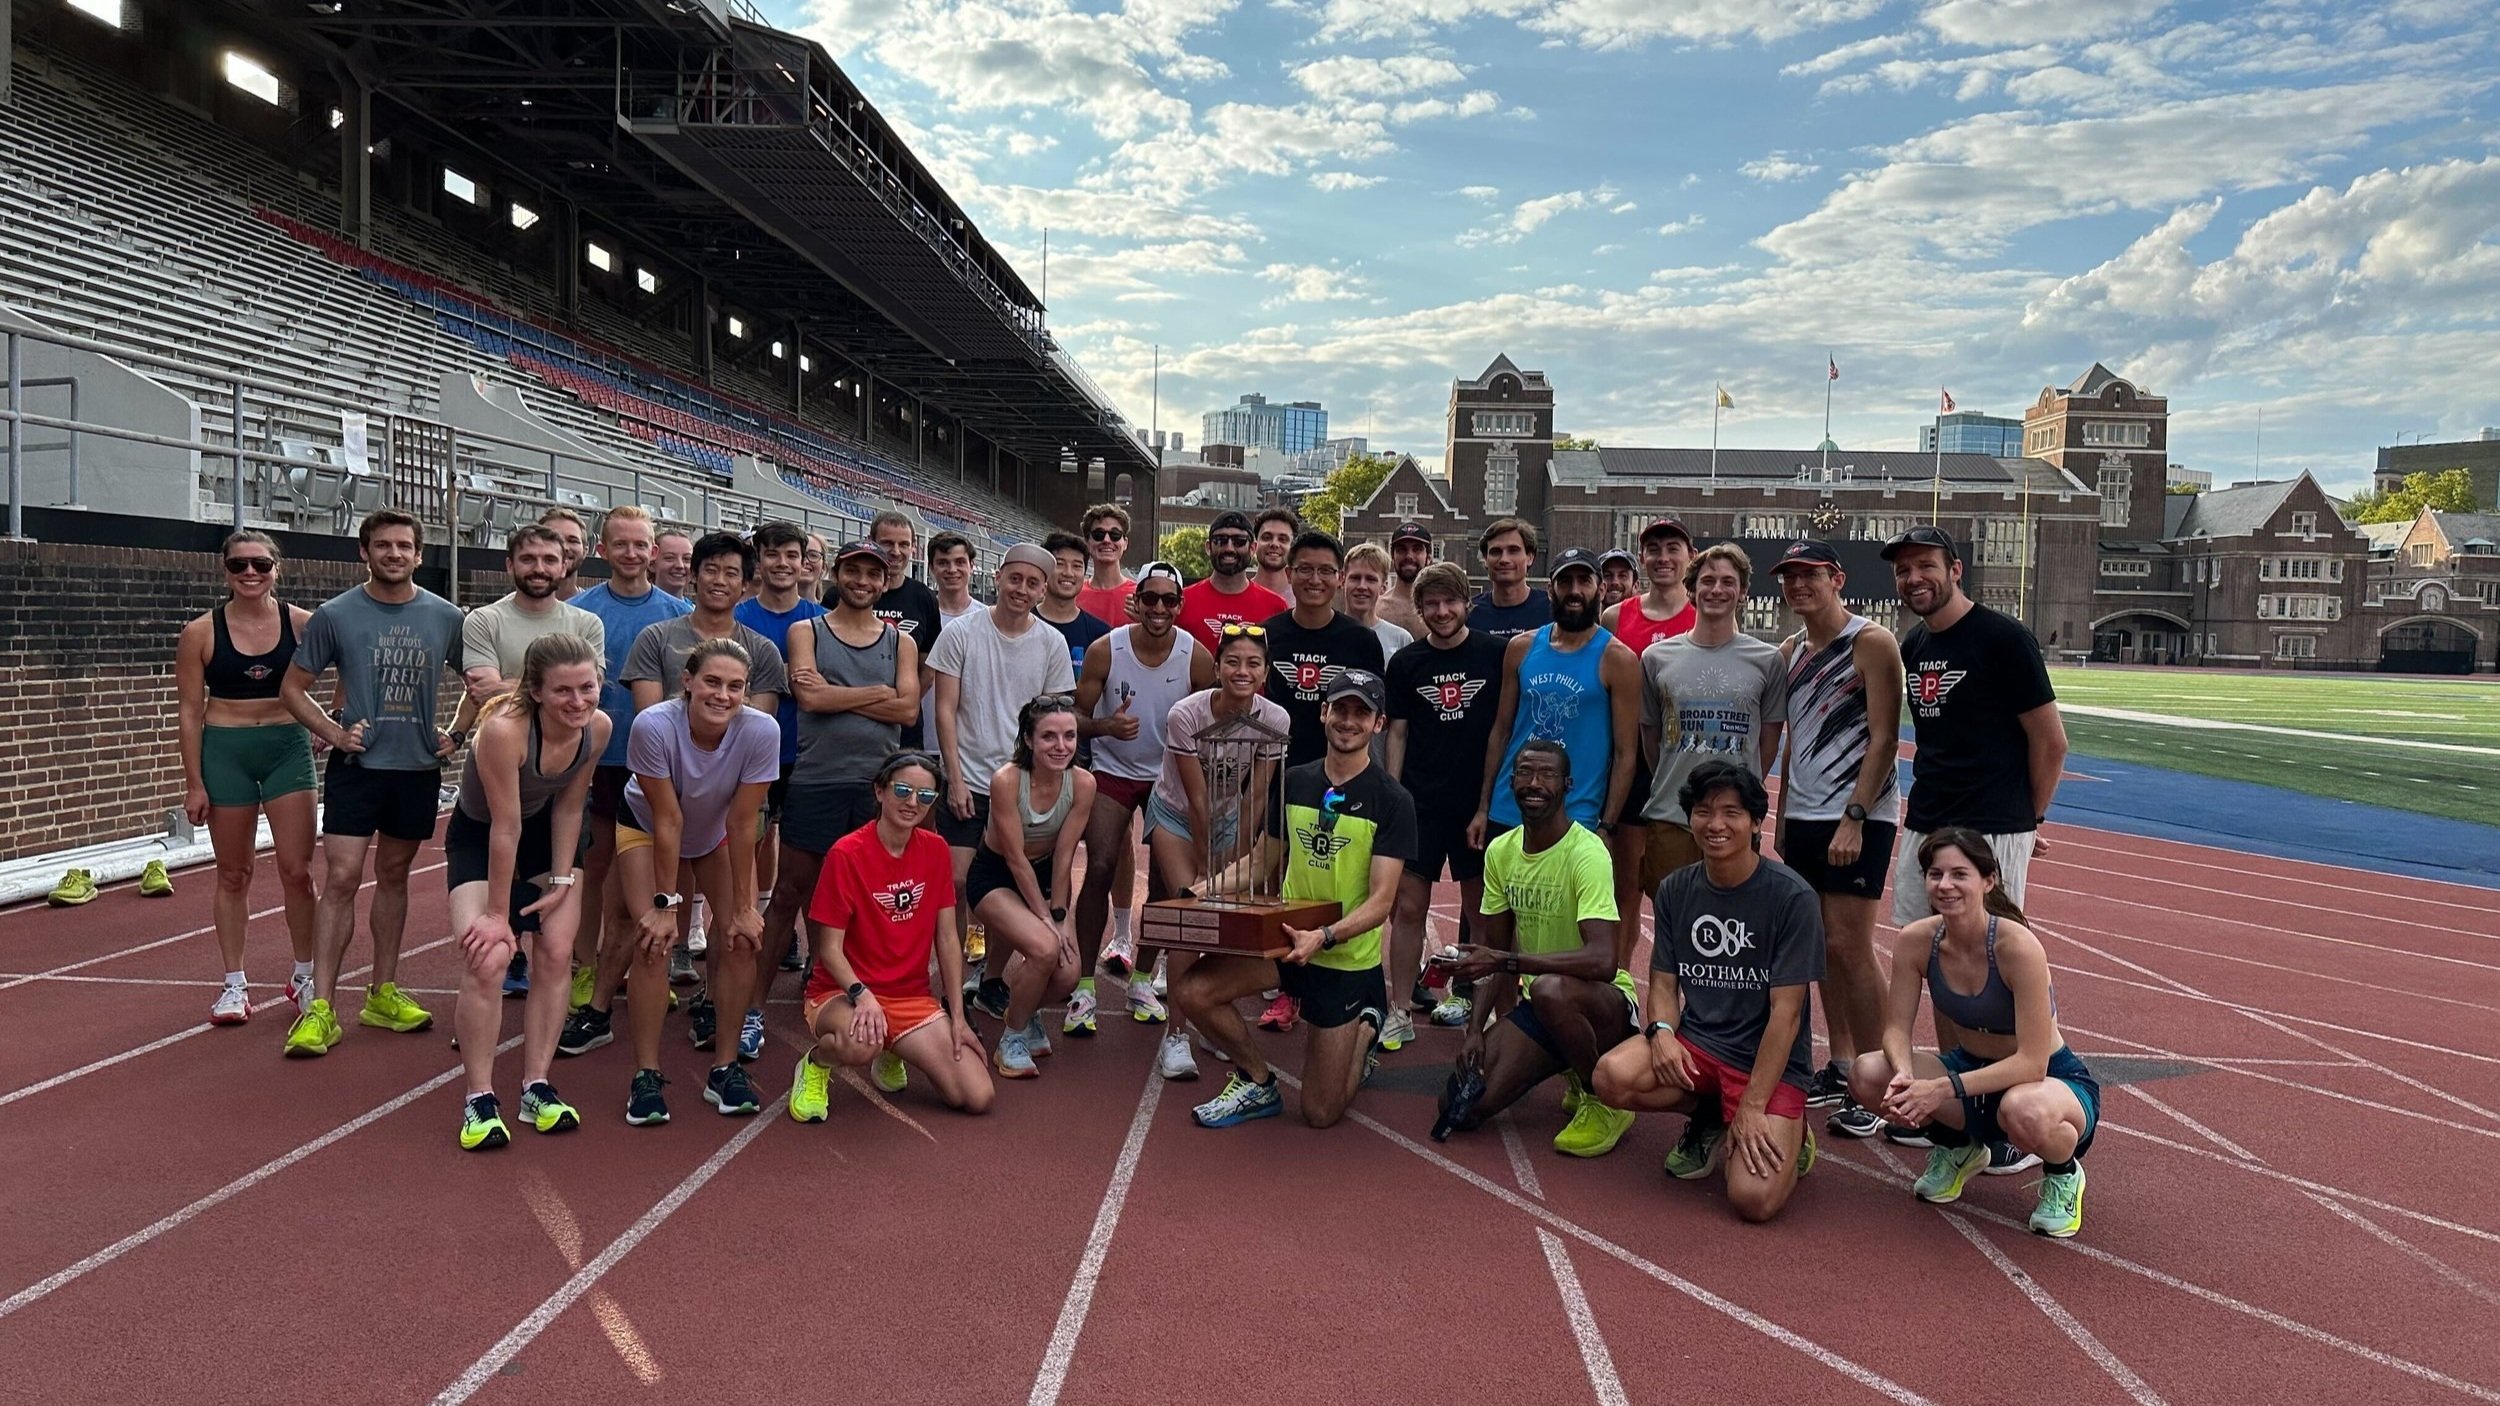 Philadelphia Runner Track Club